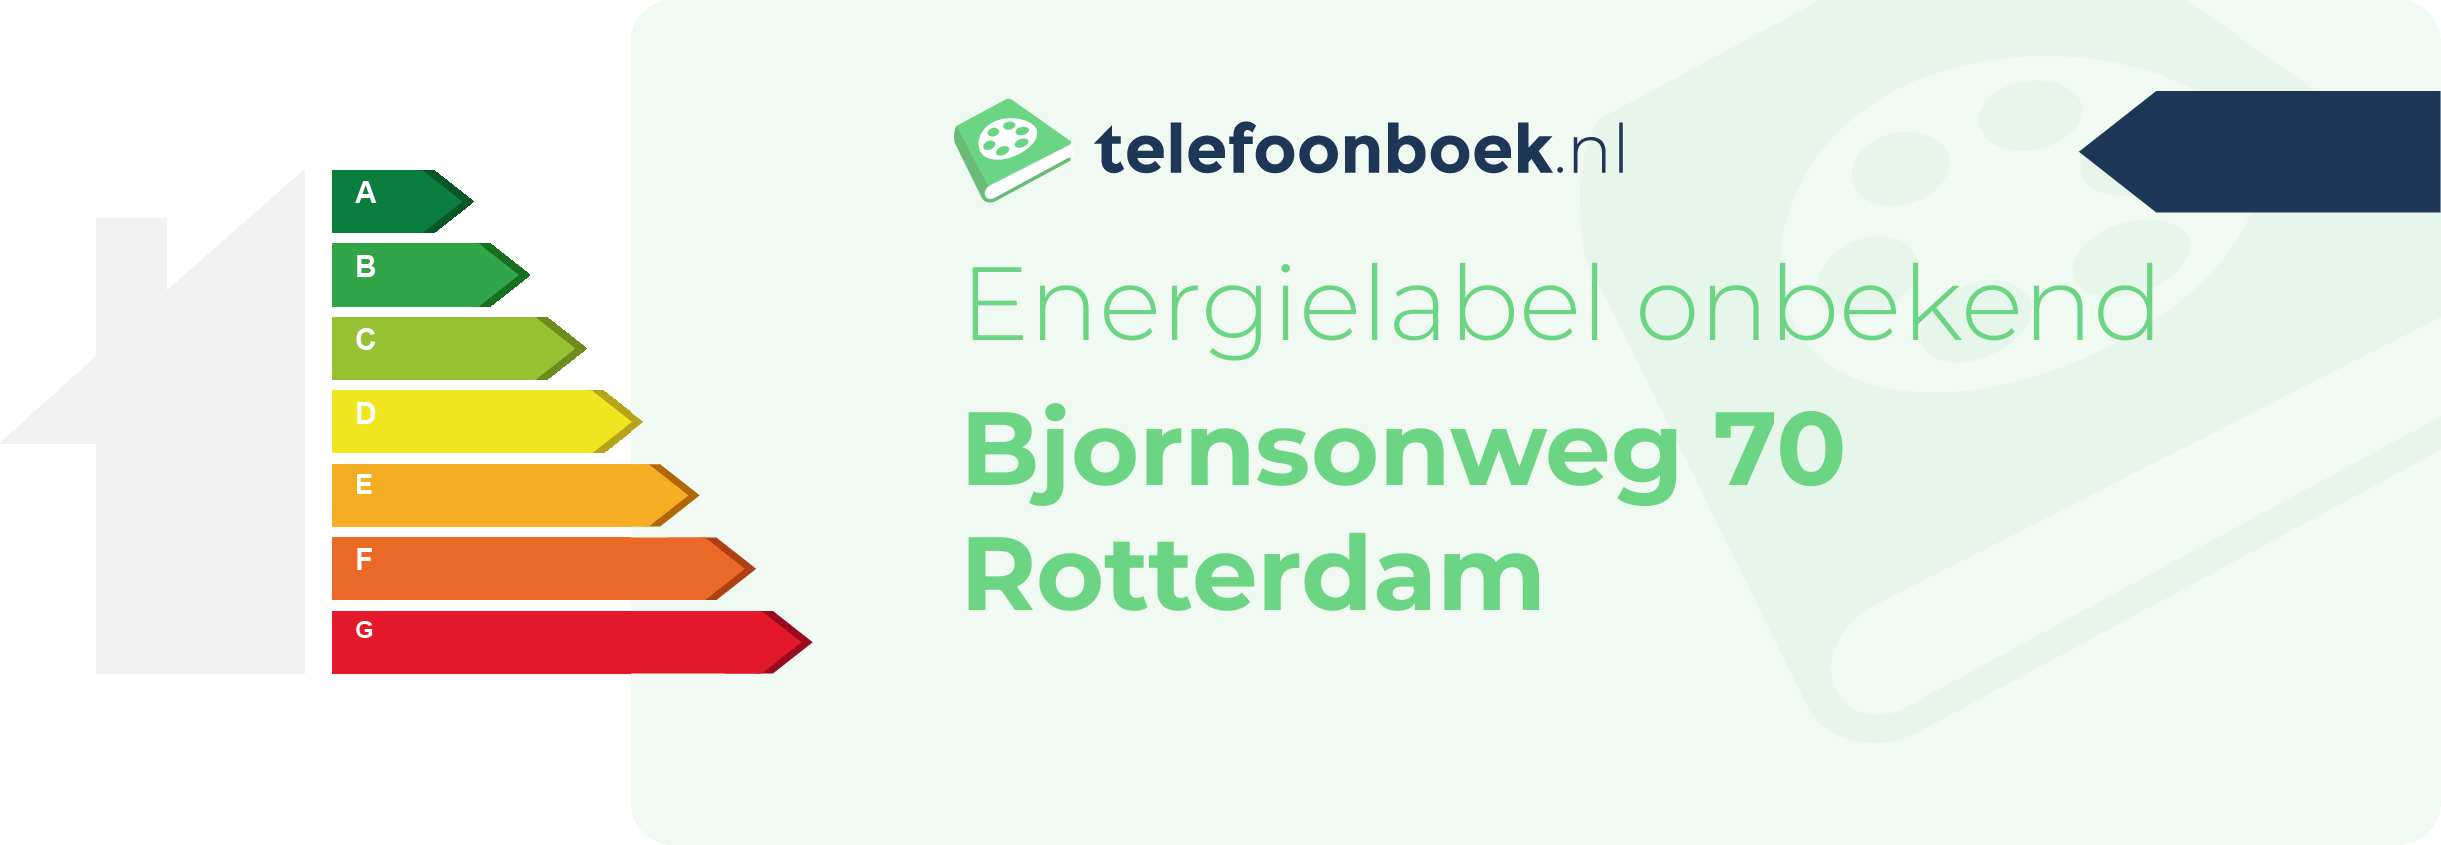 Energielabel Bjornsonweg 70 Rotterdam